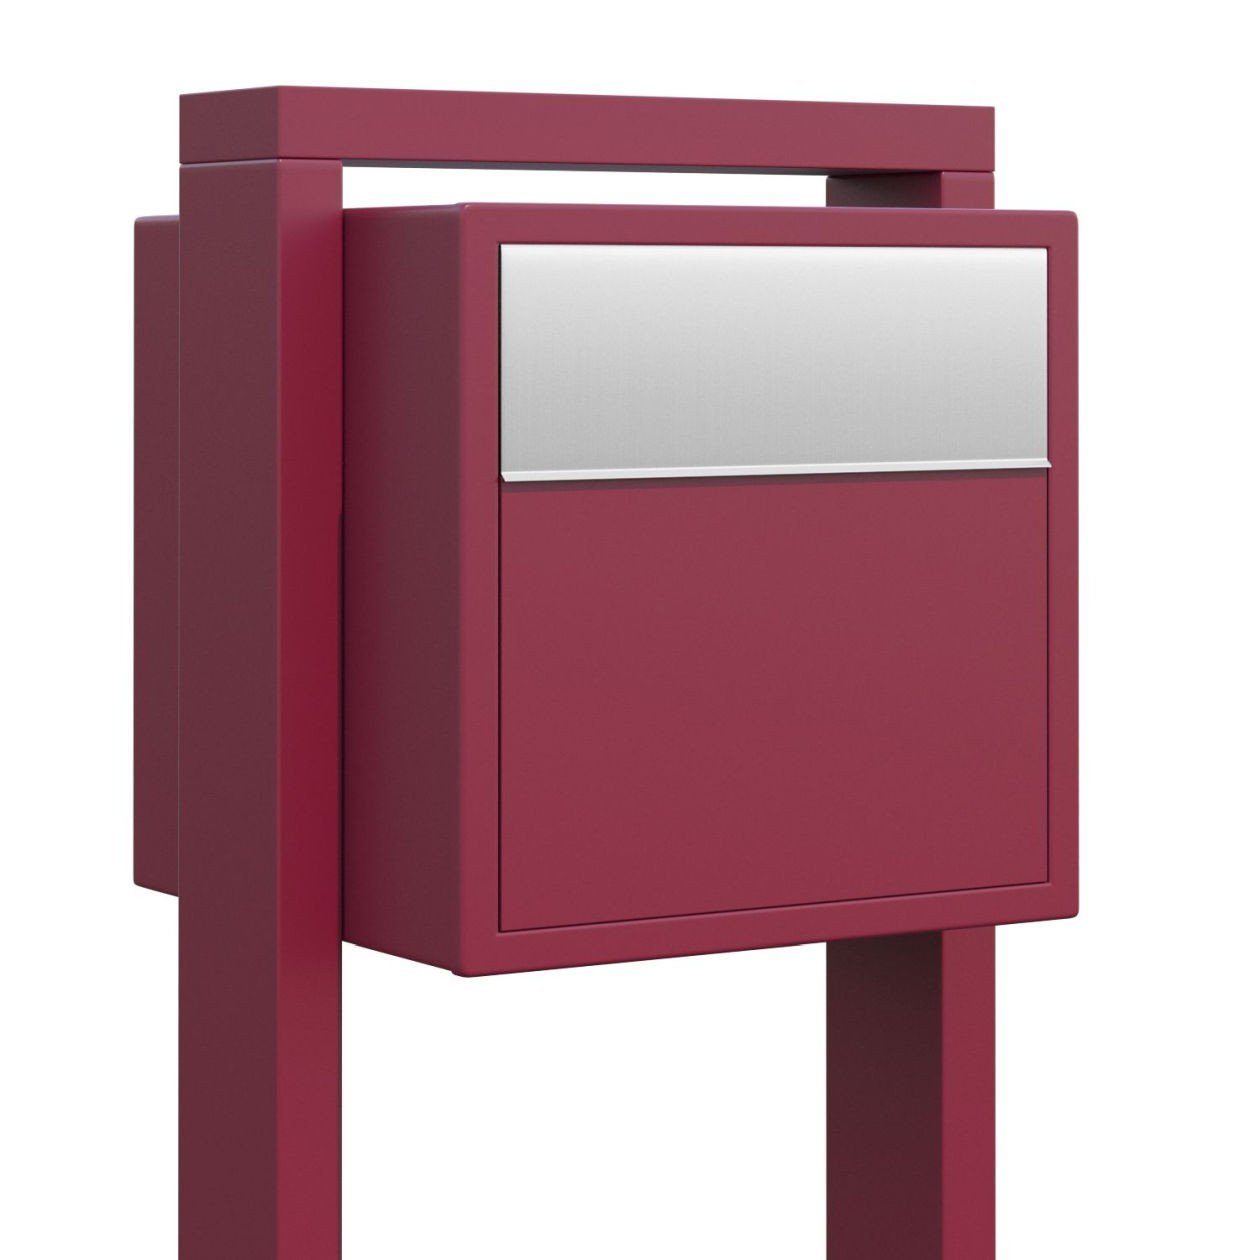 Bravios Briefkasten mit Rot Soprano Edelstahlklappe Standbriefkasten